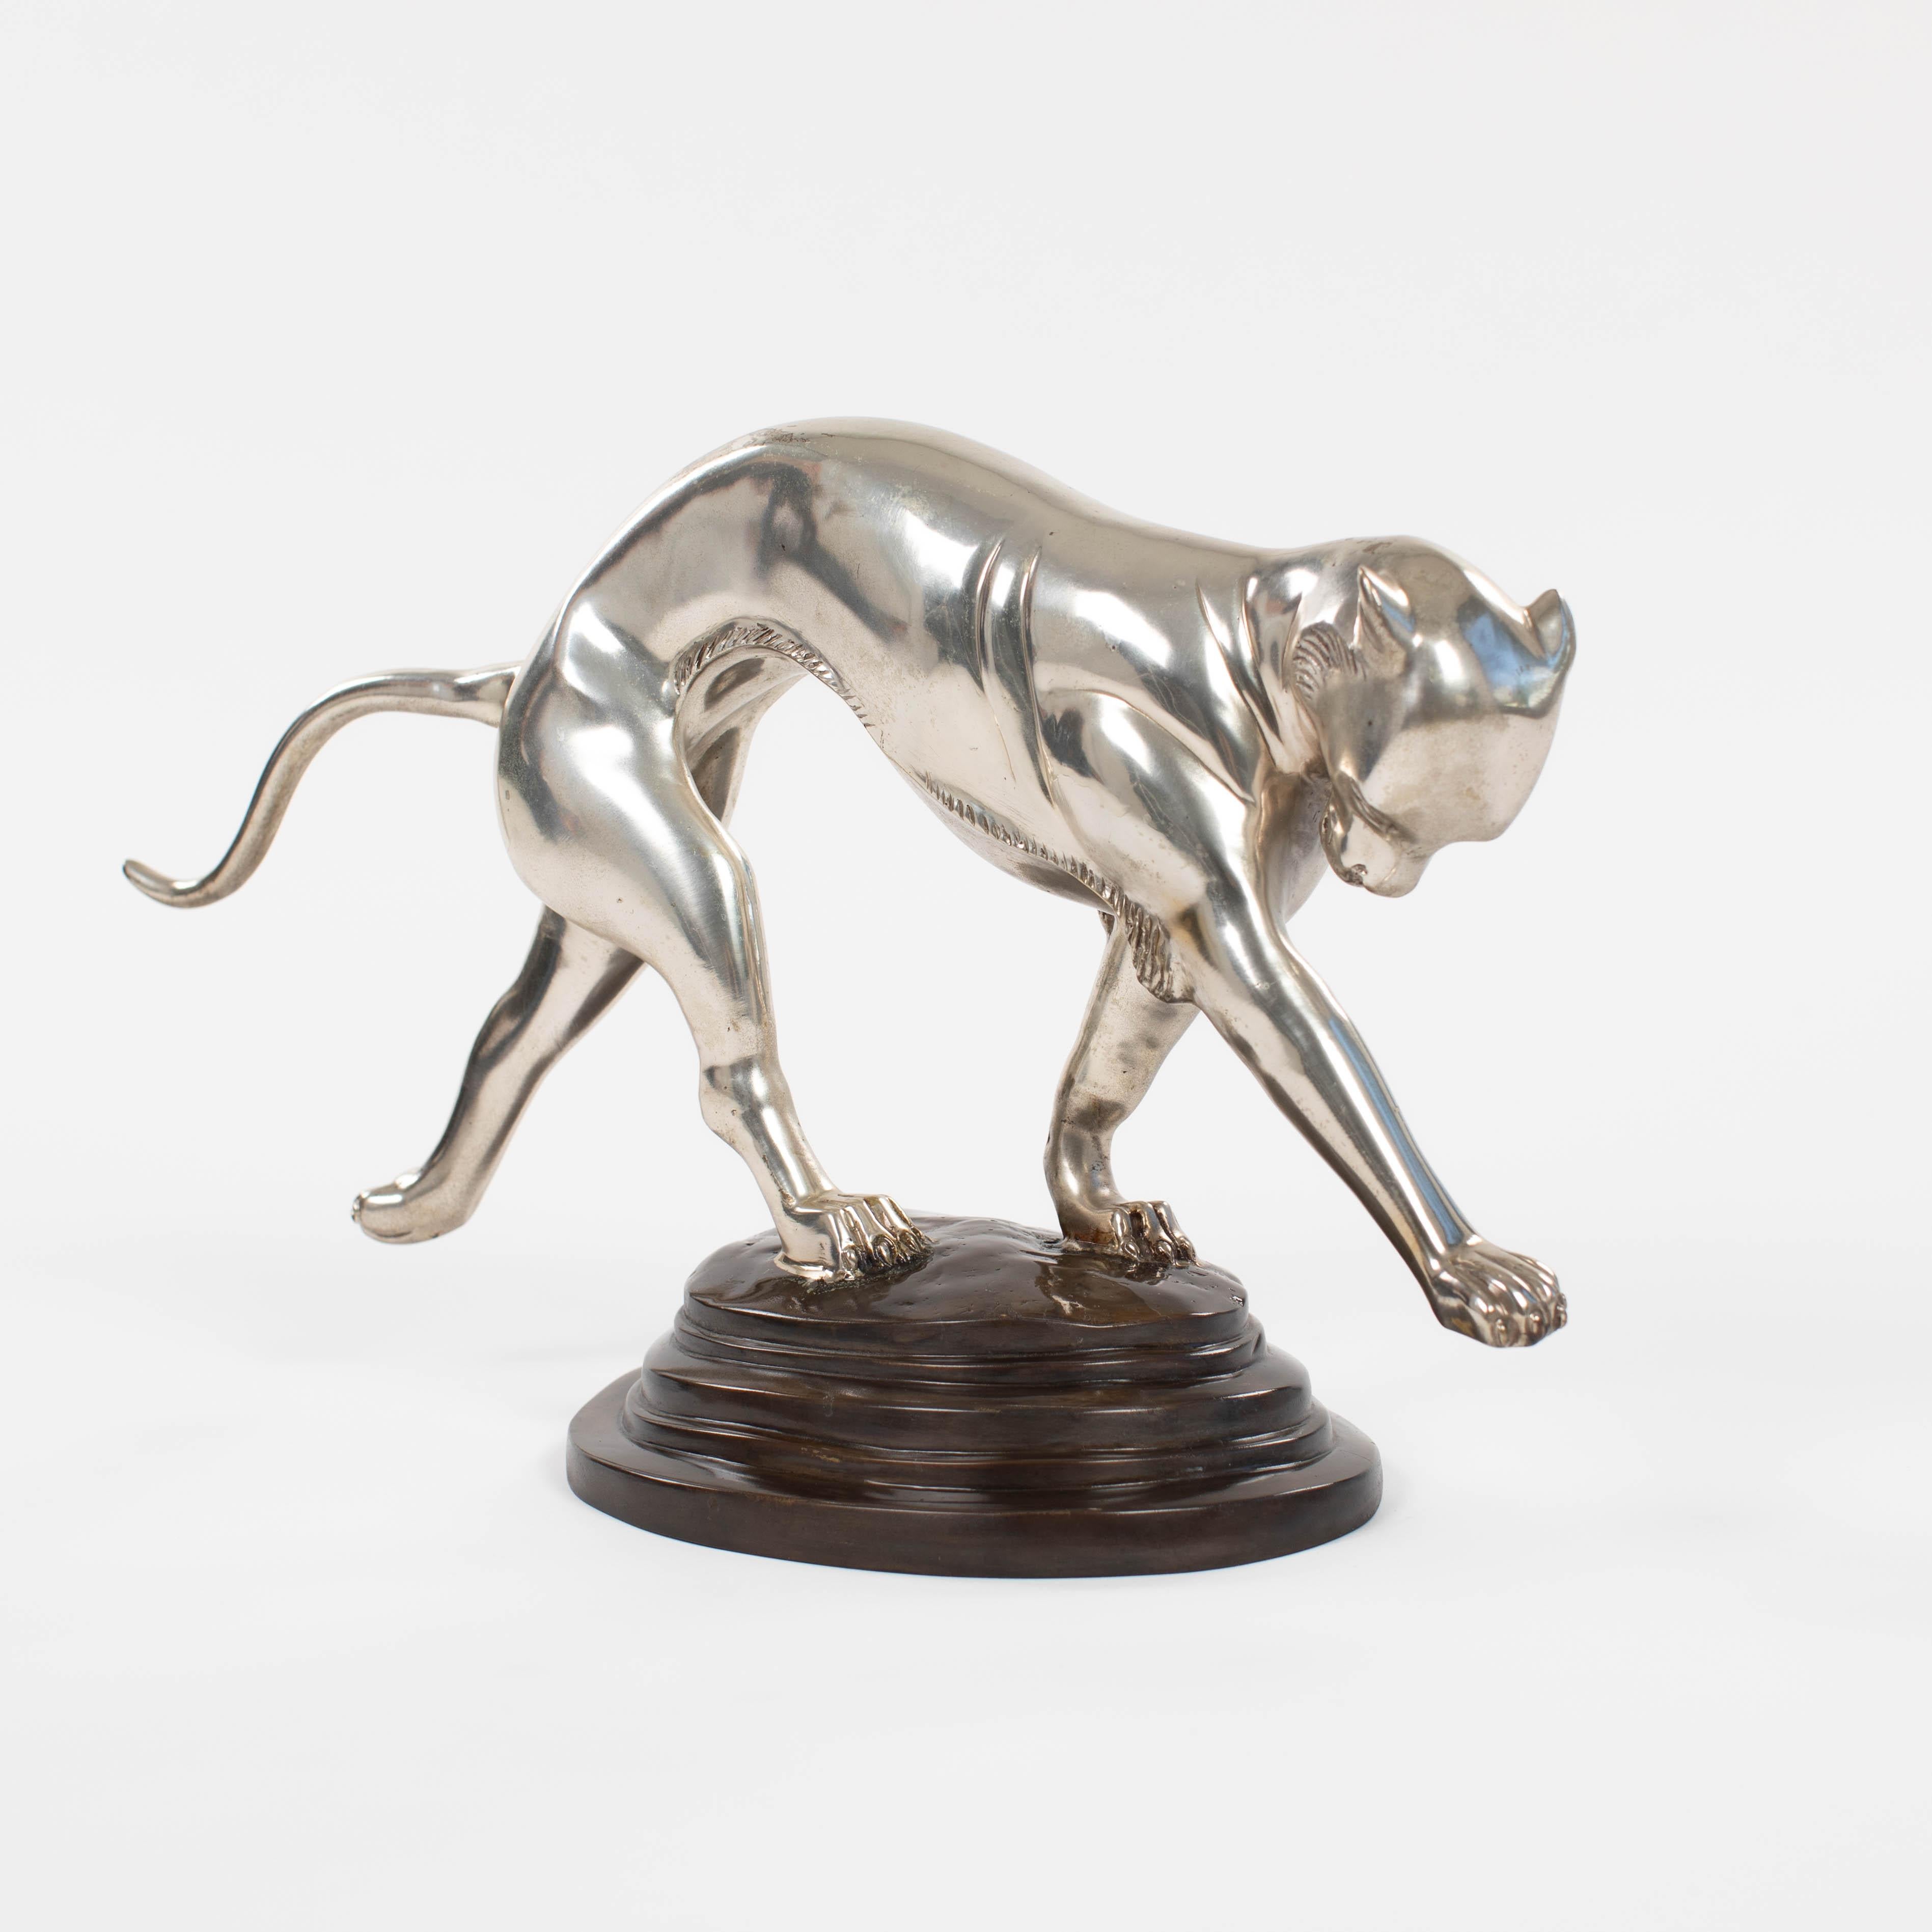 Französische Art Déco Panther-Skulptur in dynamischer Bewegung Bronzeguss versilbert 1920er Jahre

Fantastische Art-Deco-Panther-Skulptur in einer sehr eleganten Bewegung.
Der Sockel ist oval und gestuft und 2 Pfoten des Tieres stehen auf dem